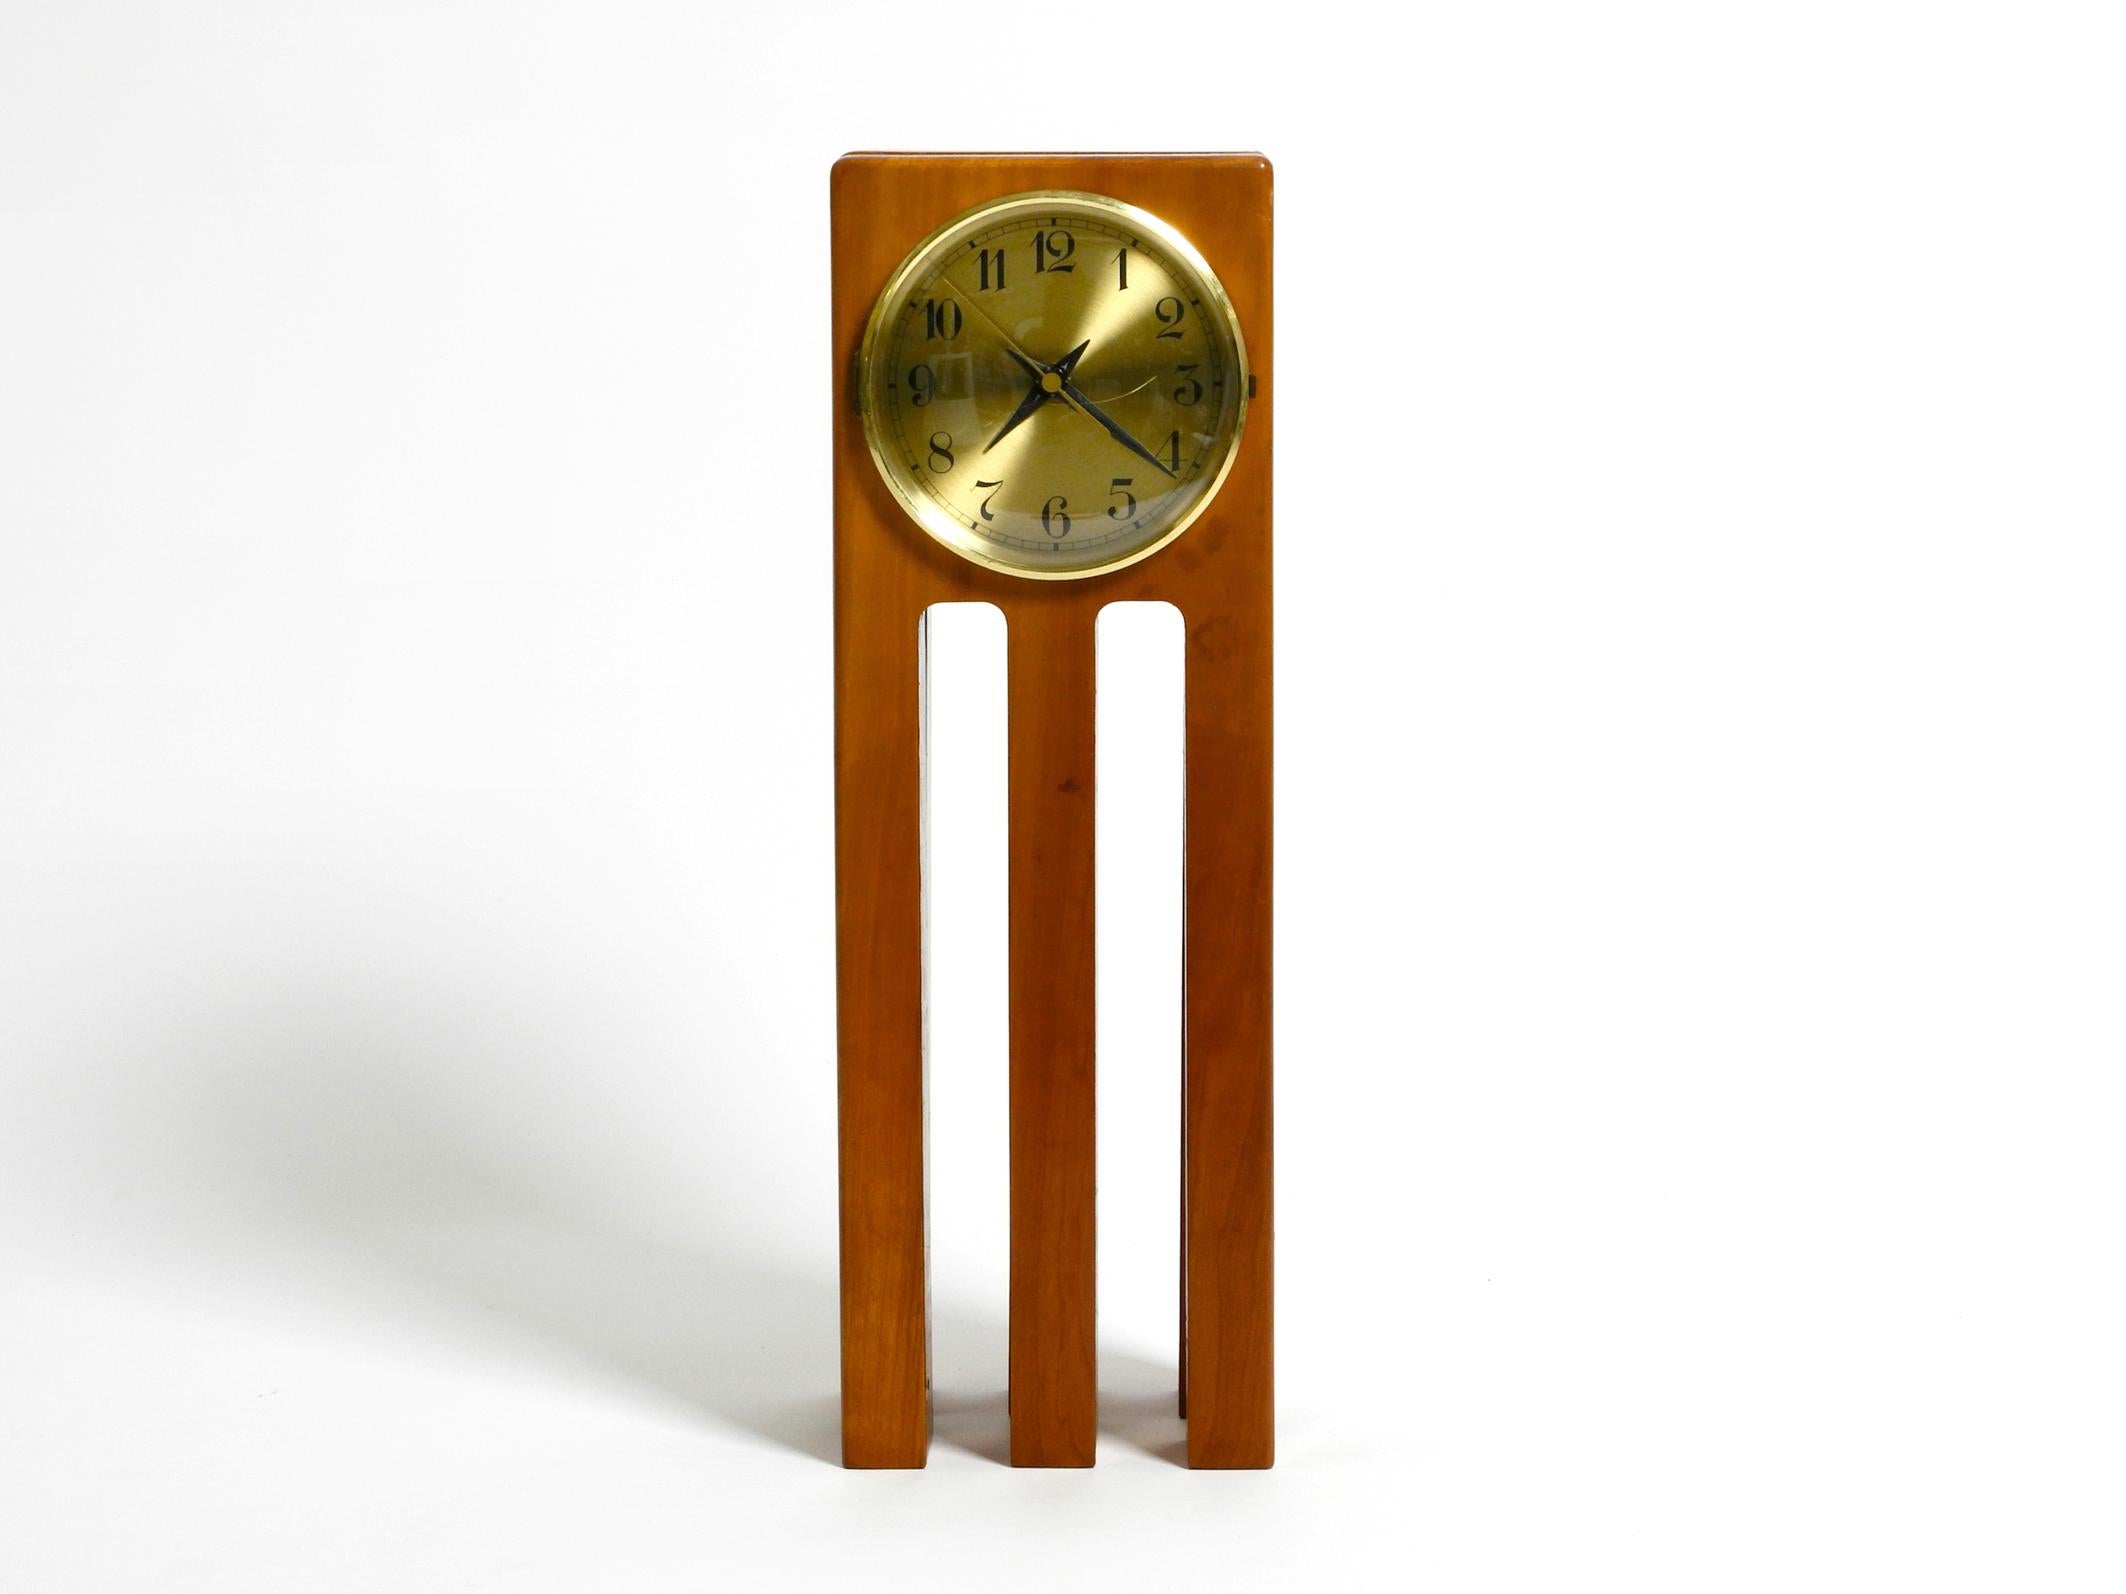 Grande horloge de table inhabituelle de conception postmoderne des années 1980, en bois de cerisier
Un design intéressant en bois massif. Le fabricant est inconnu.
Mais il s'agit certainement d'un fabricant réputé, en raison de sa bonne